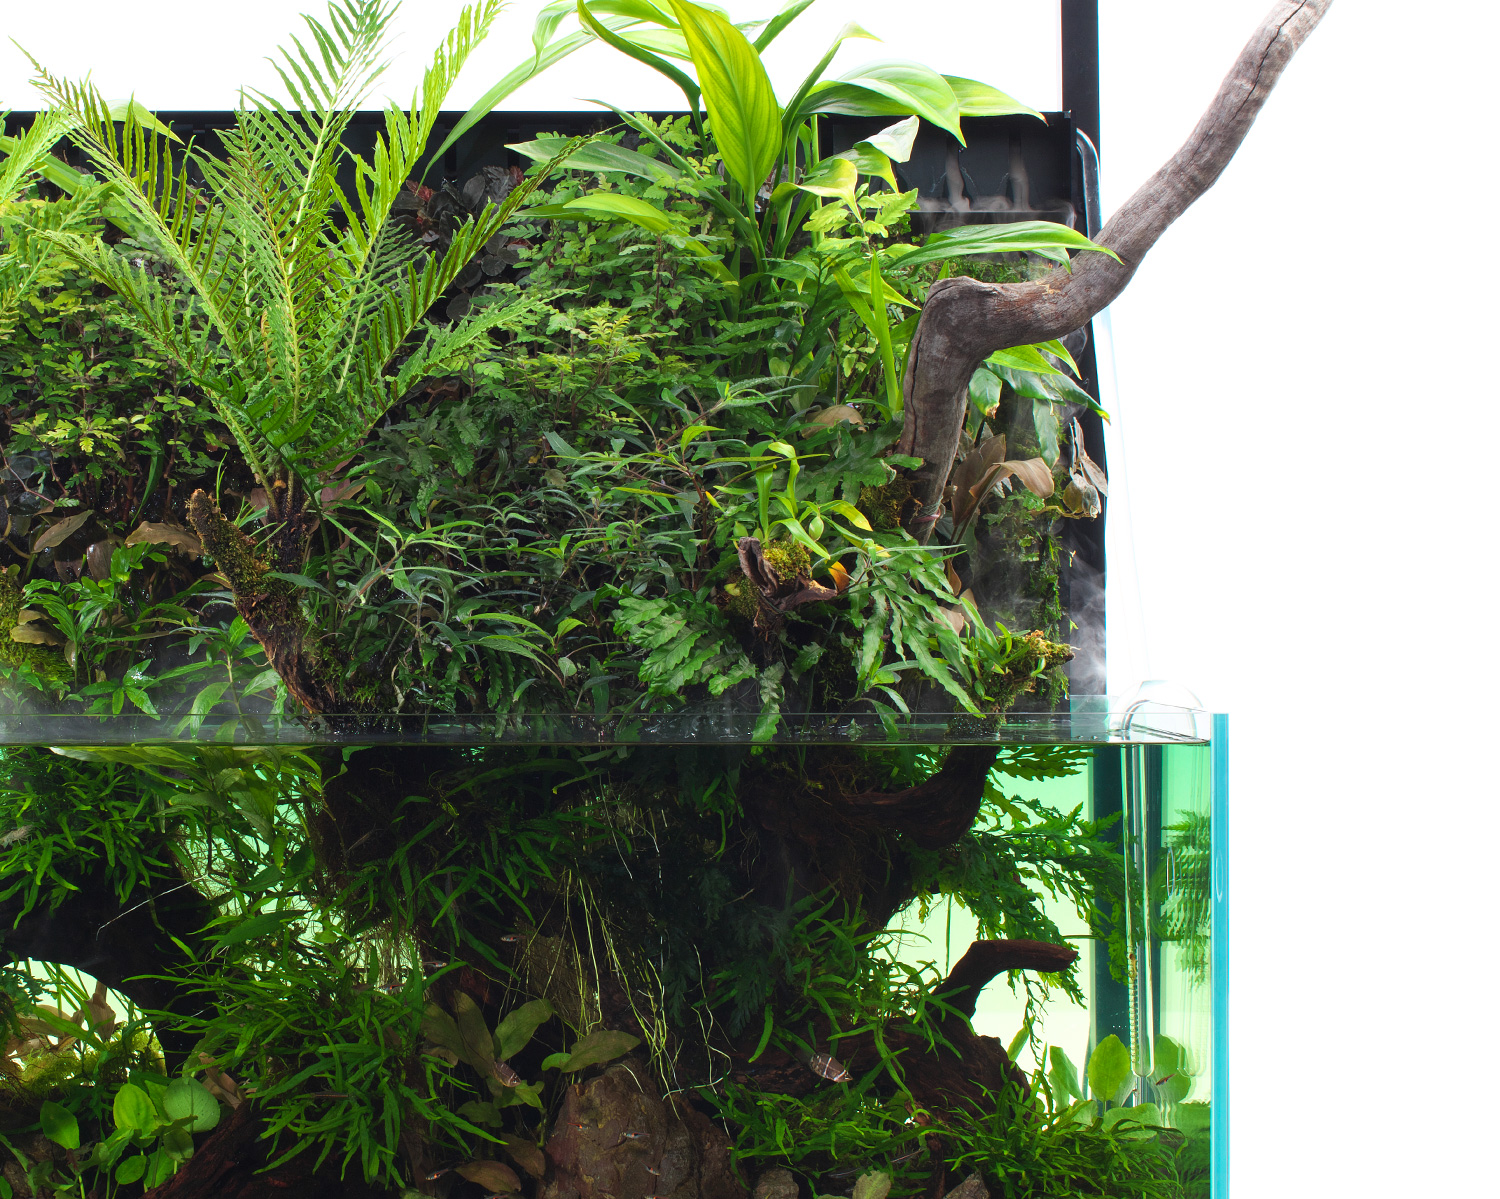 MIZUKUSA MIST WALL 「熱帯植物を繁茂させる最新システム」 | AQUA ...